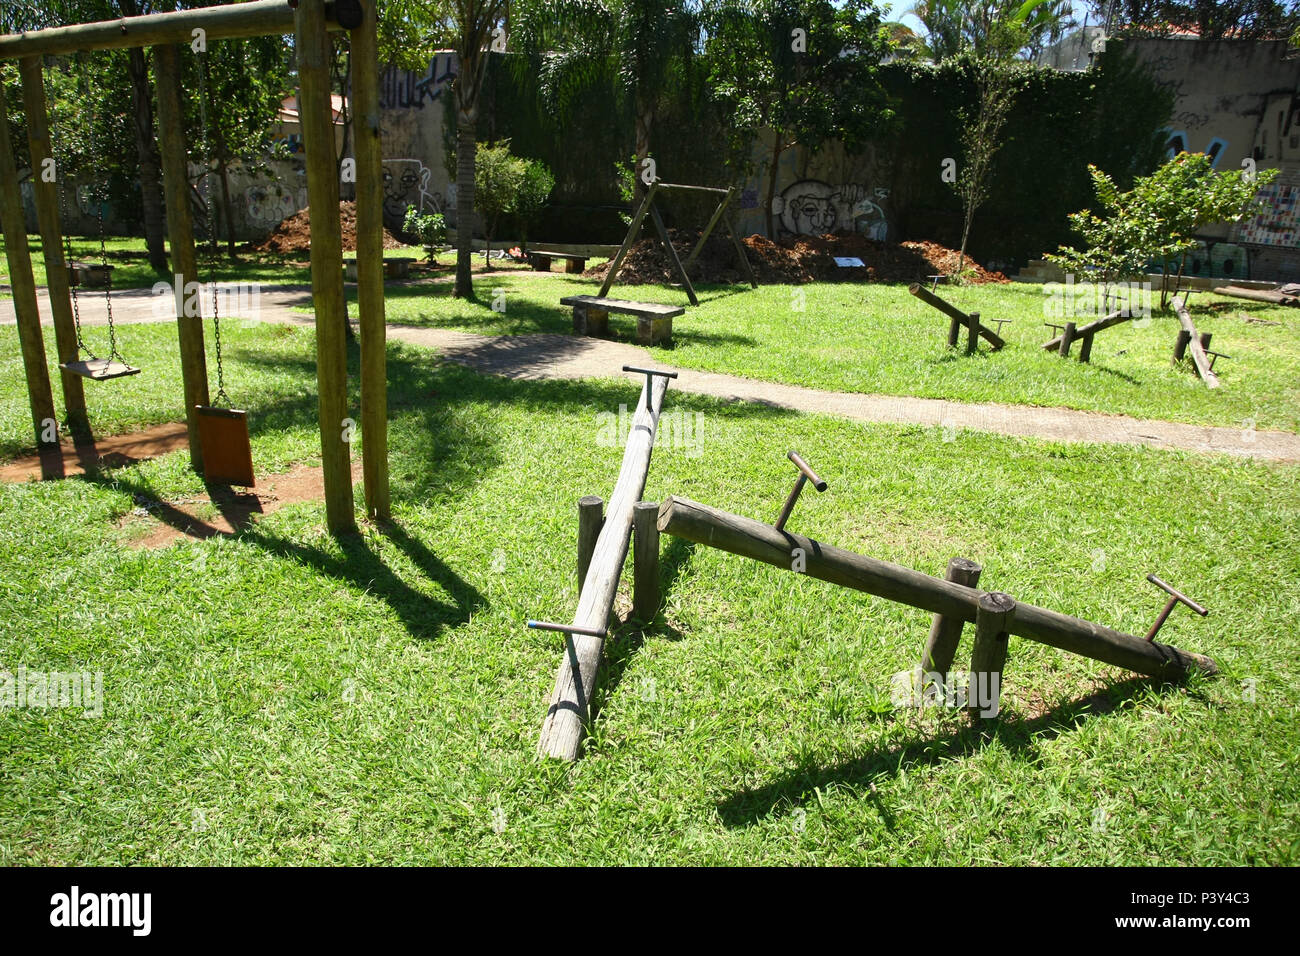 Parque infantil em má conservação no bairro do Sumaré zona oeste de São Paulo. Stock Photo